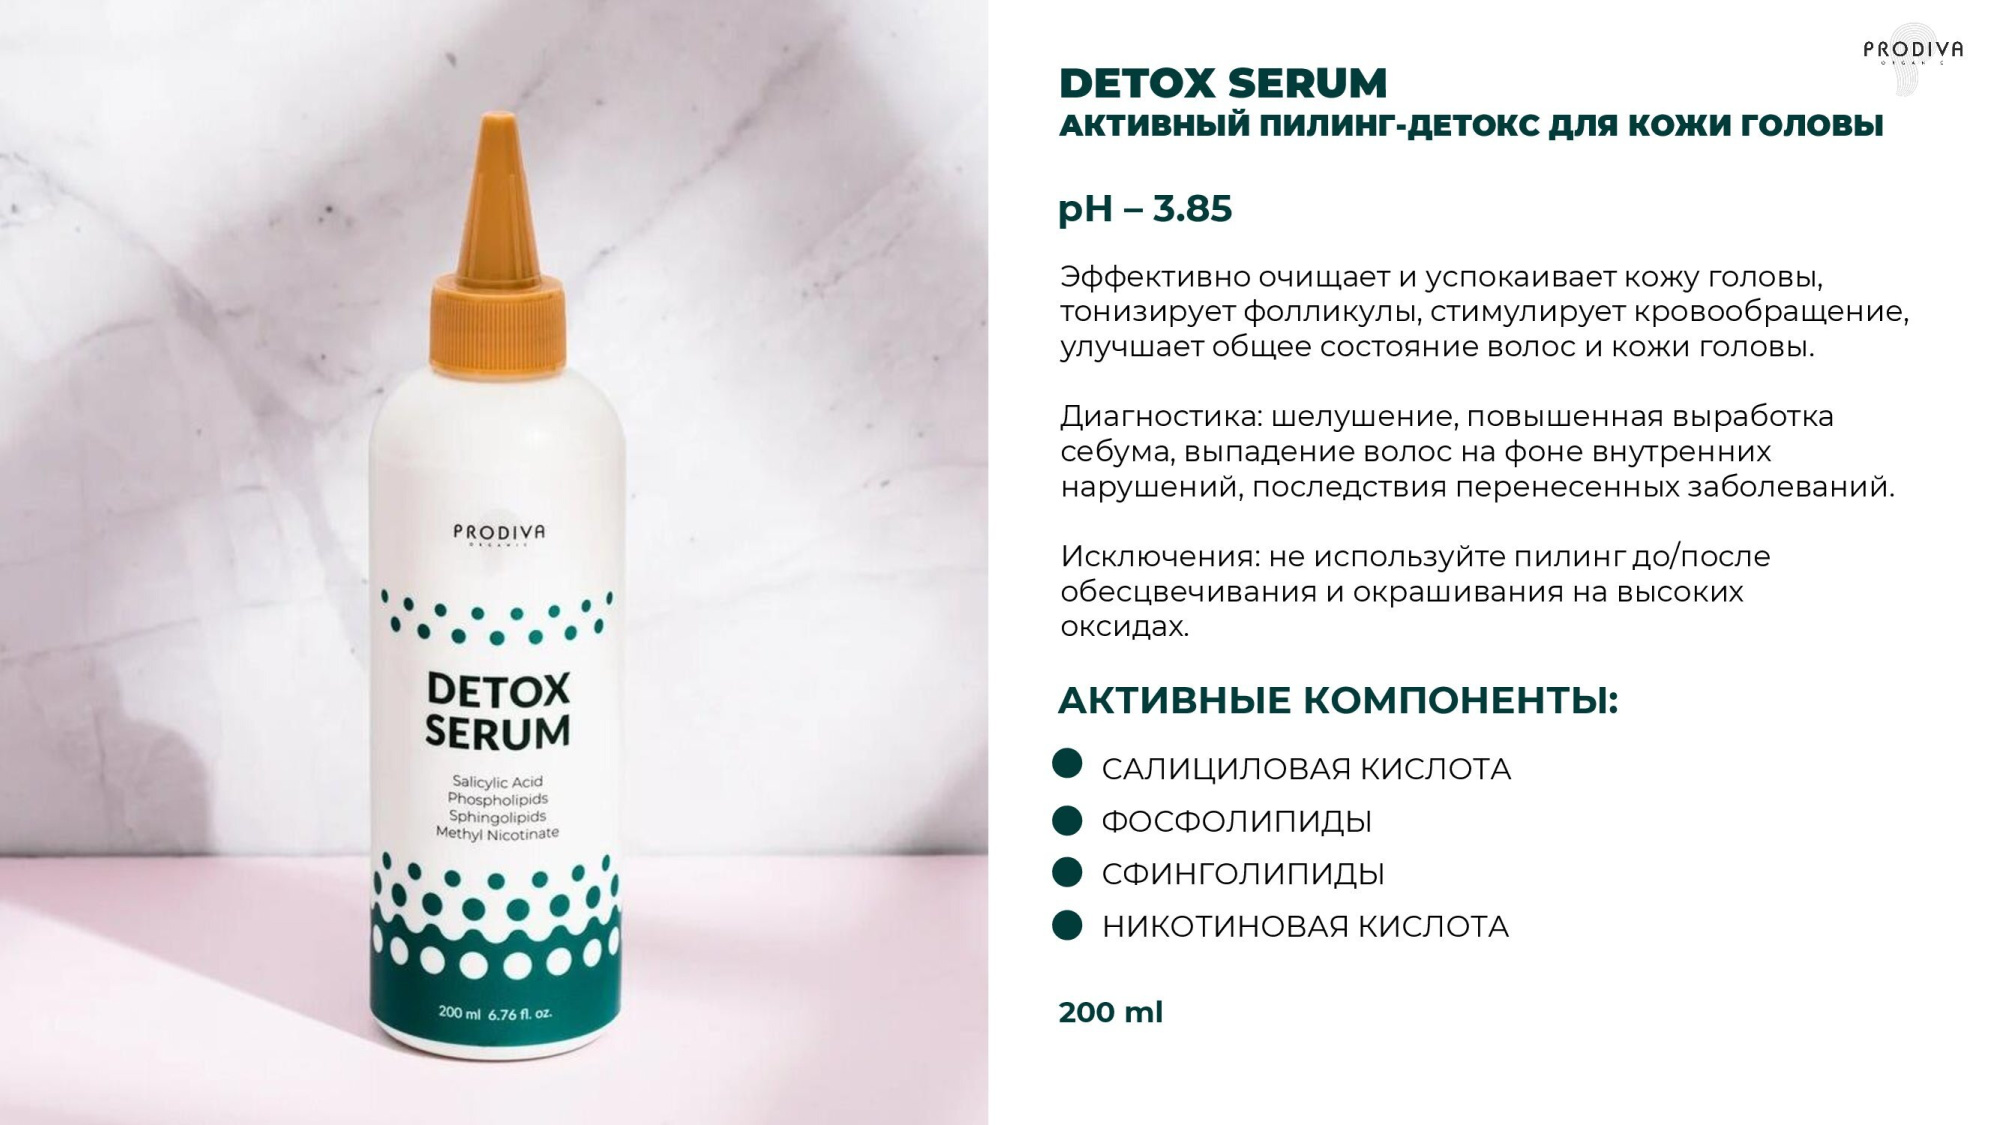 Детокс-эмульсия для укрепления и очищения кожи головы PRODIVA Detox Serum, 200 мл